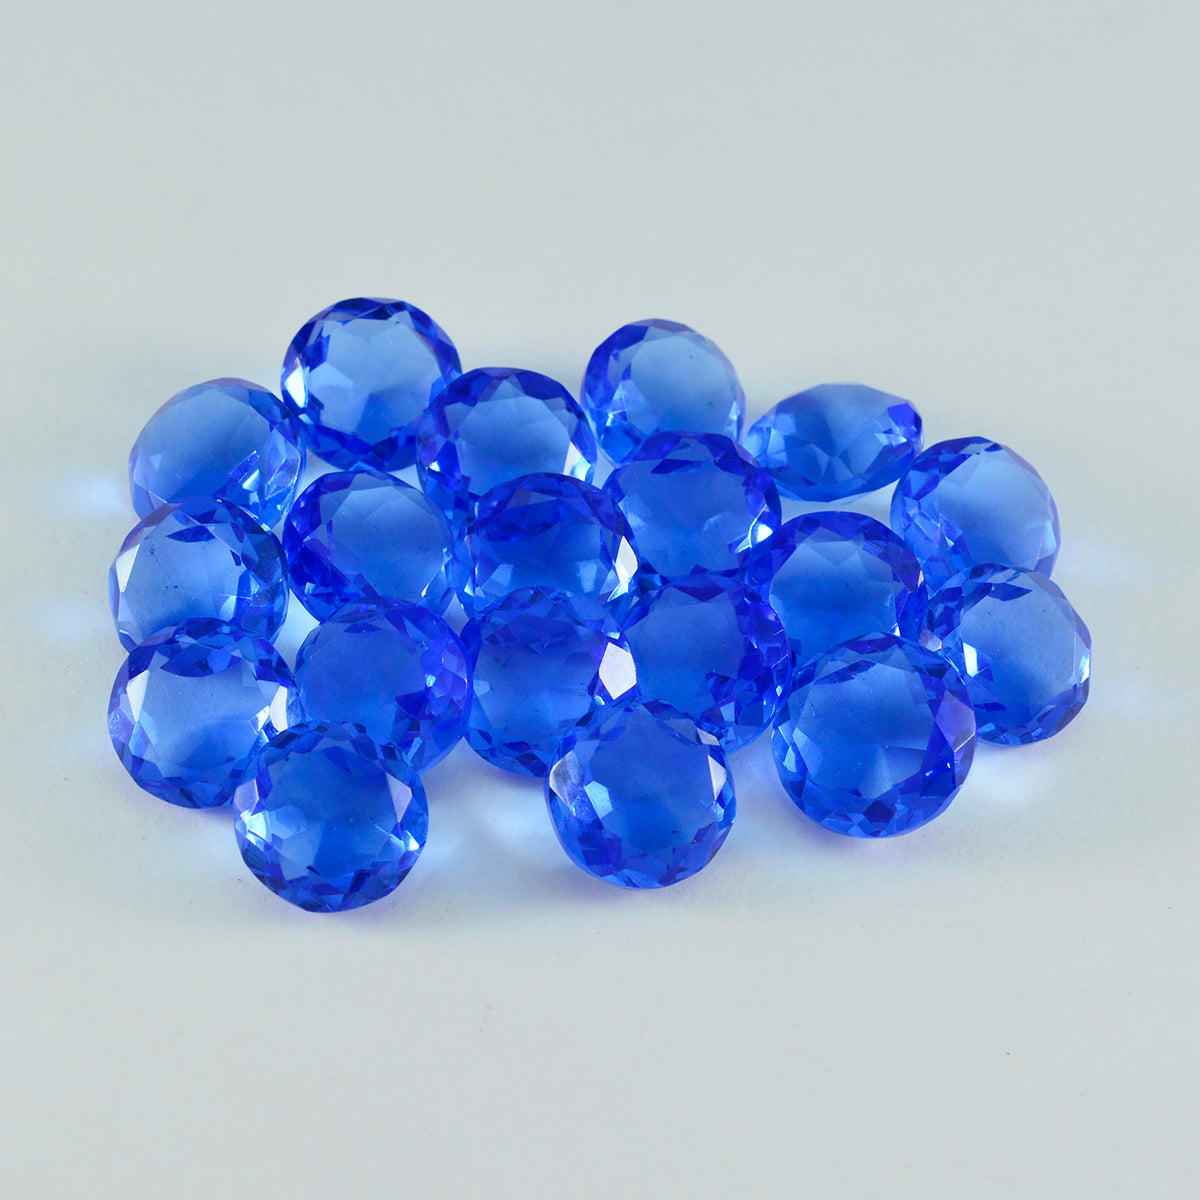 Riyogems 1 Stück blauer Saphir, CZ, facettiert, 7 x 7 mm, runde Form, hervorragende Qualität, loser Edelstein